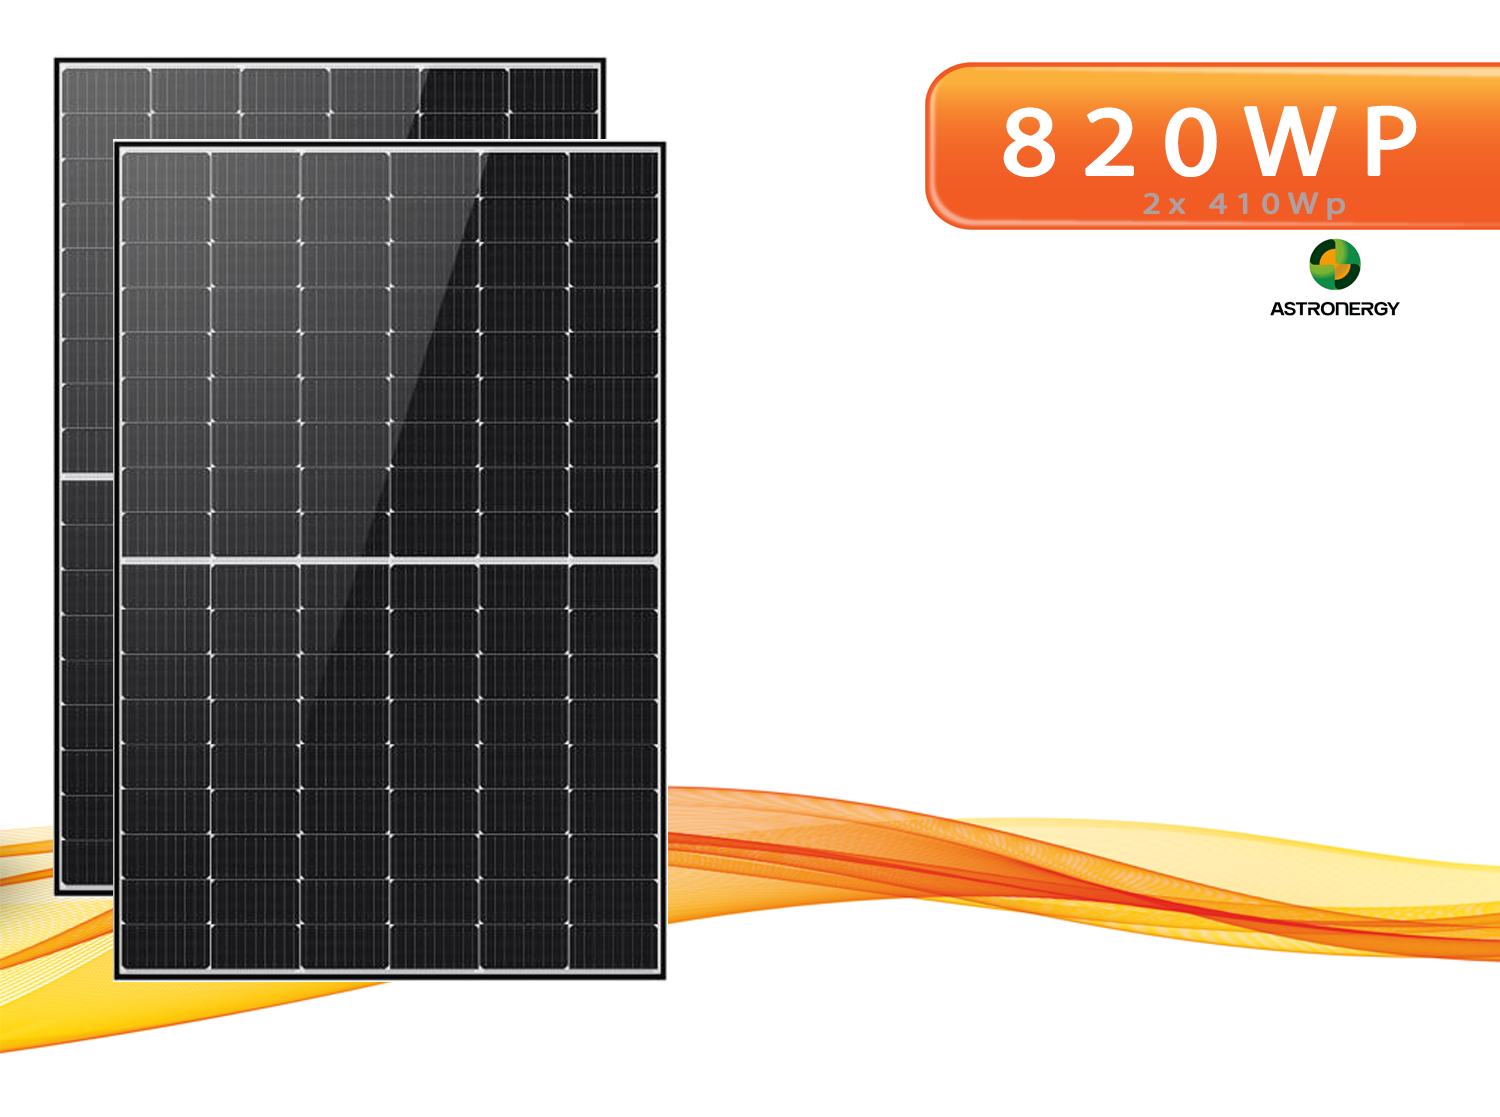 2x ASTRONERGY CHSM54M-HC 410W Black Frame PV Solarmodule für Balkonkraftwerk